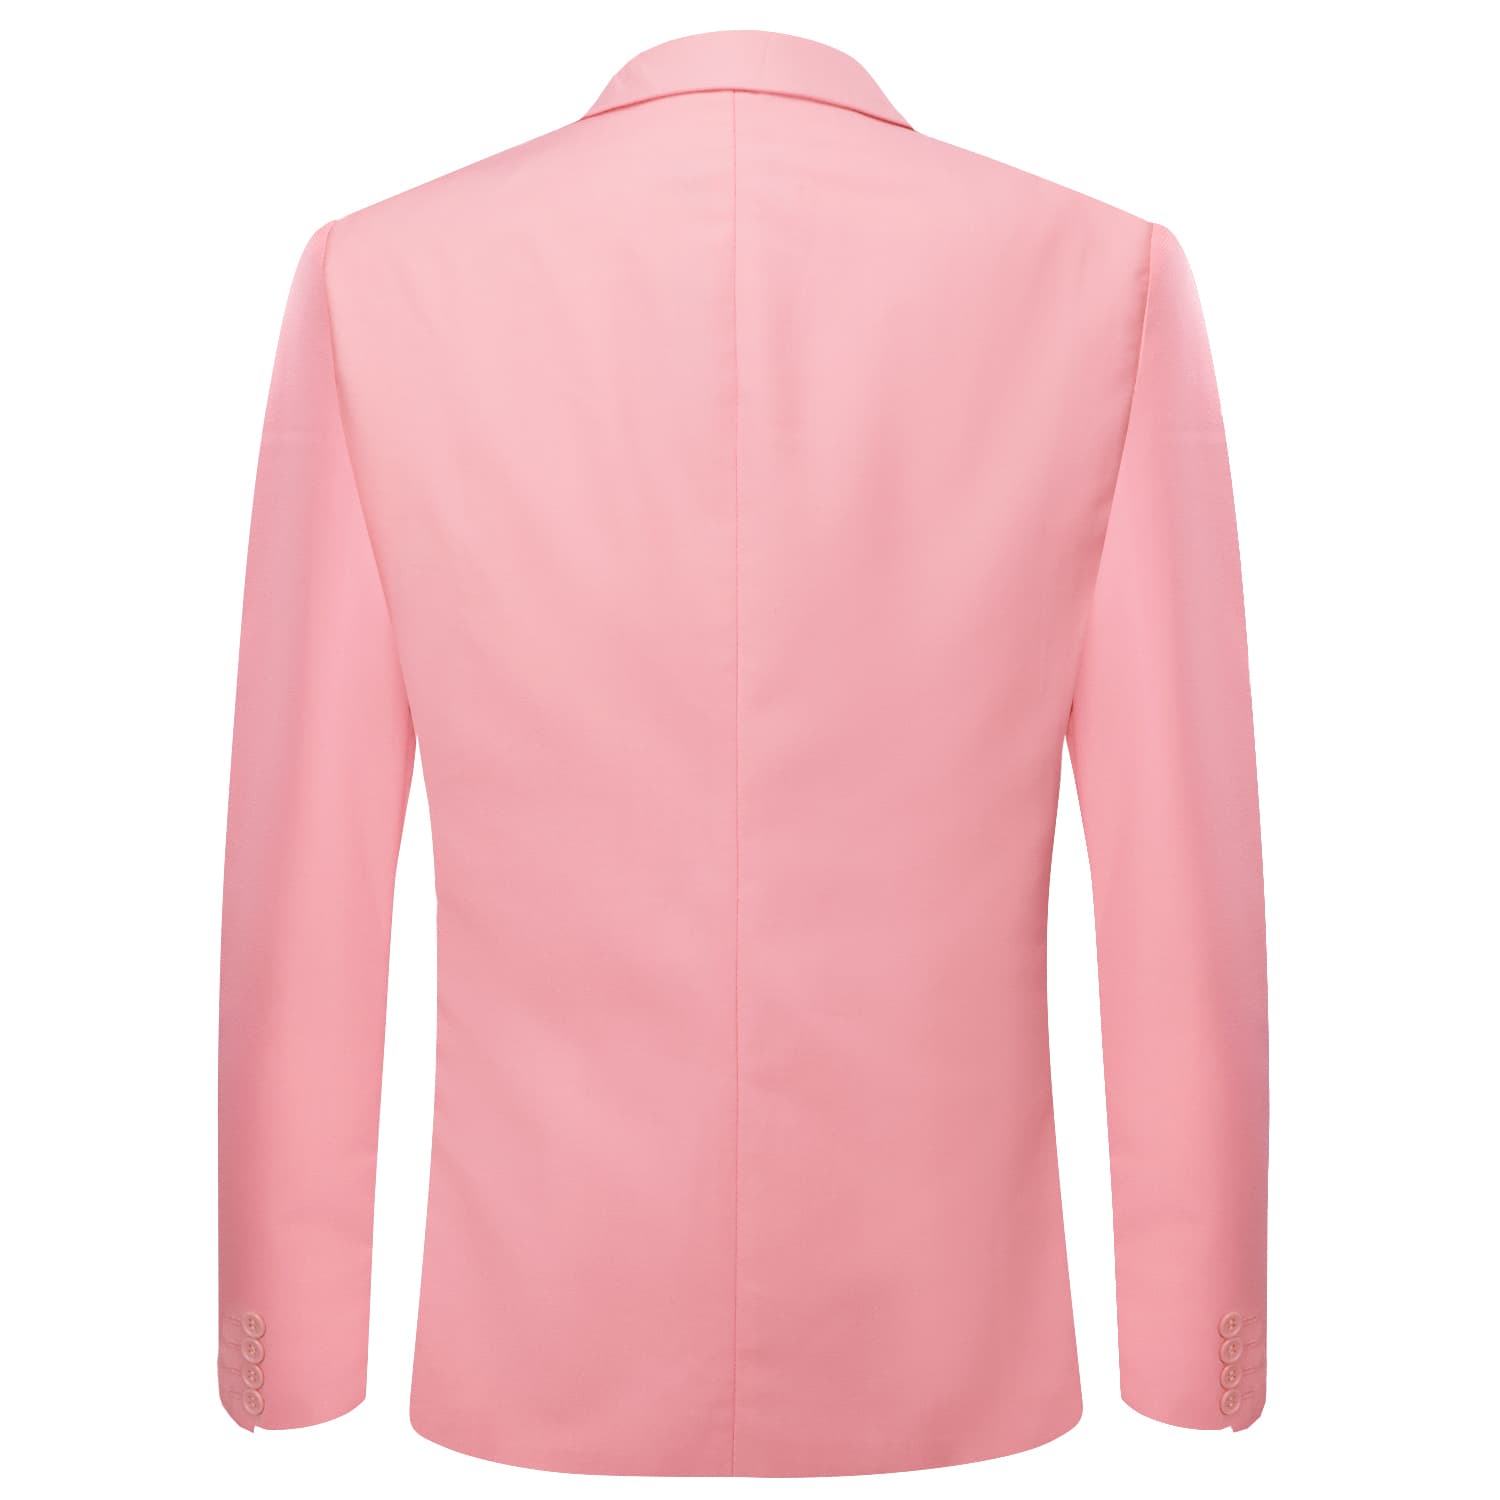 Blazer LightCoral Pink Men's Wedding Business Solid Top Men Suit